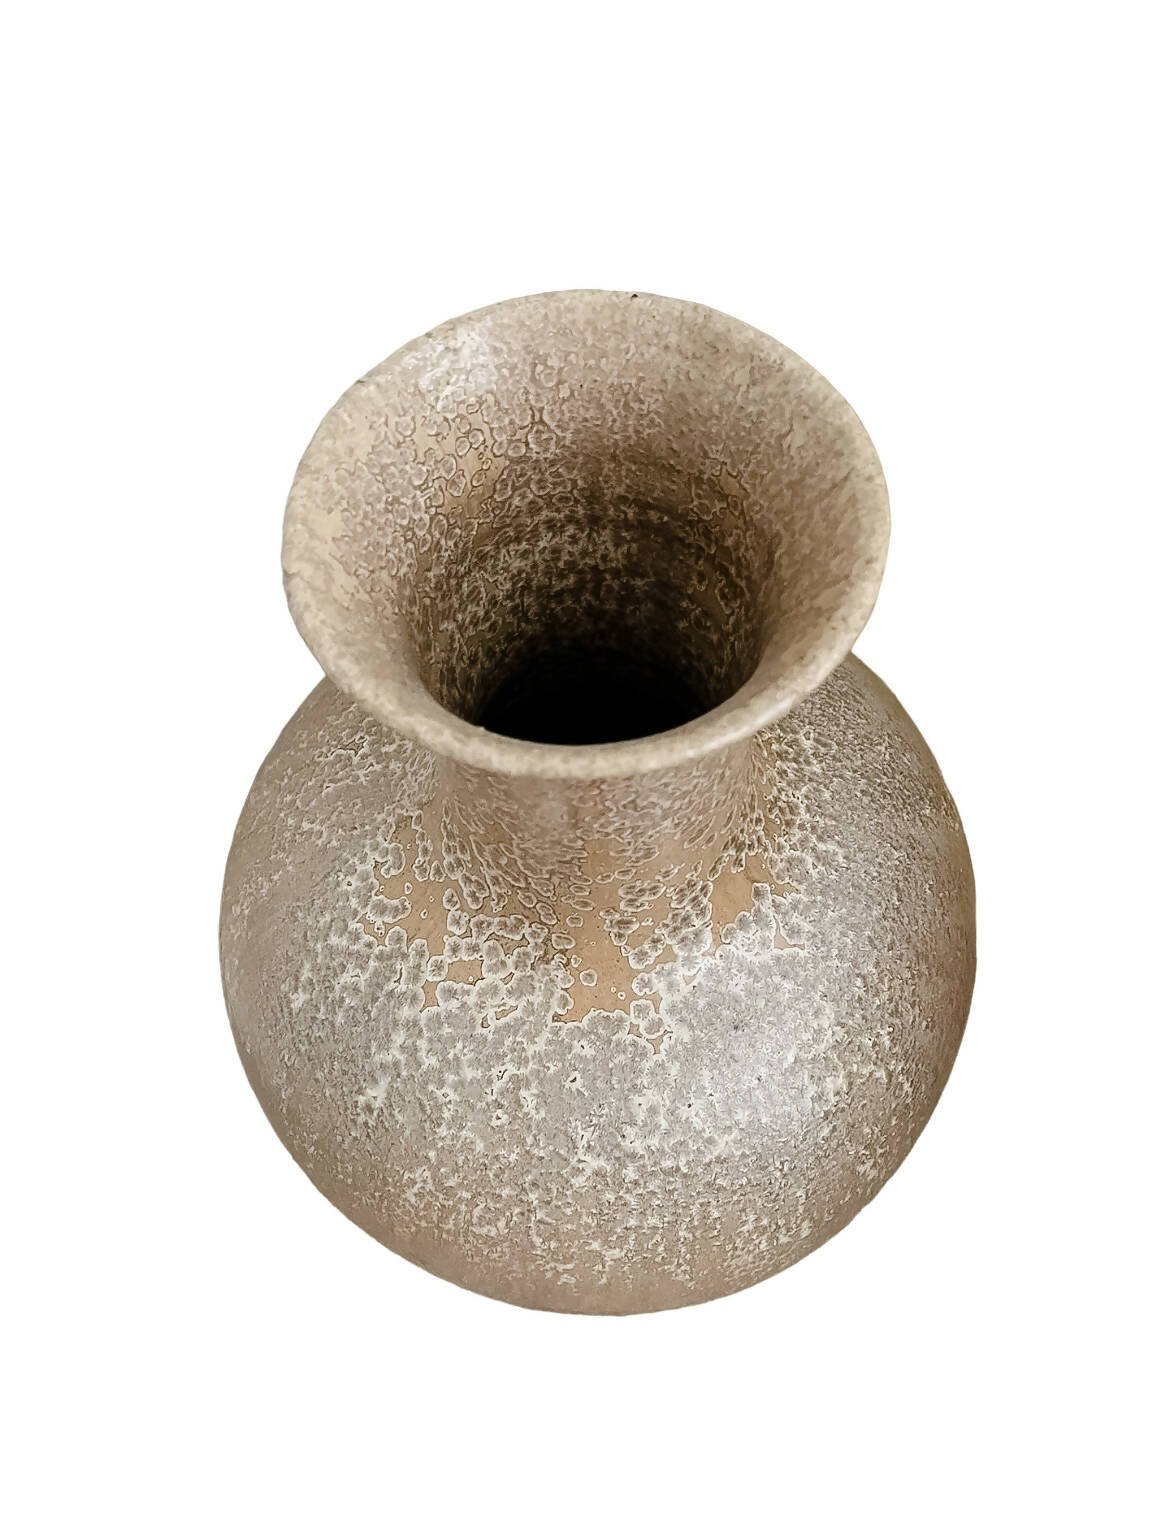 XL Handthrown Vase, Signed Vintage